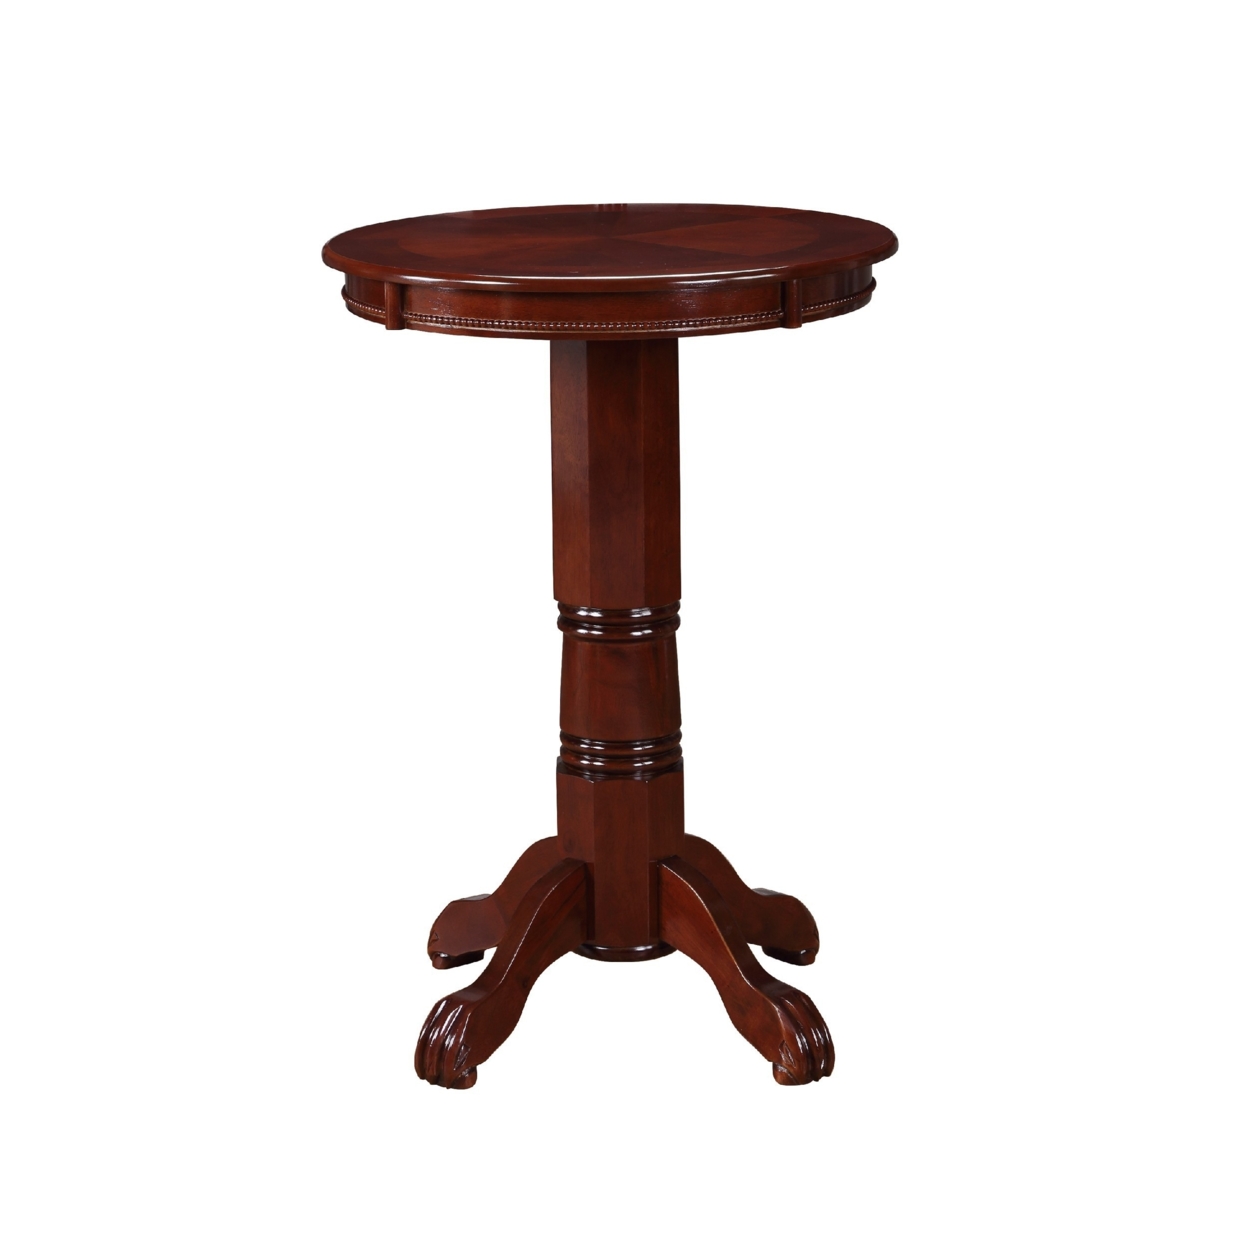 Ava 42 Inch Pub Bar Table, Wood, Sunburst Design, Carved Pedestal, Espresso Brown